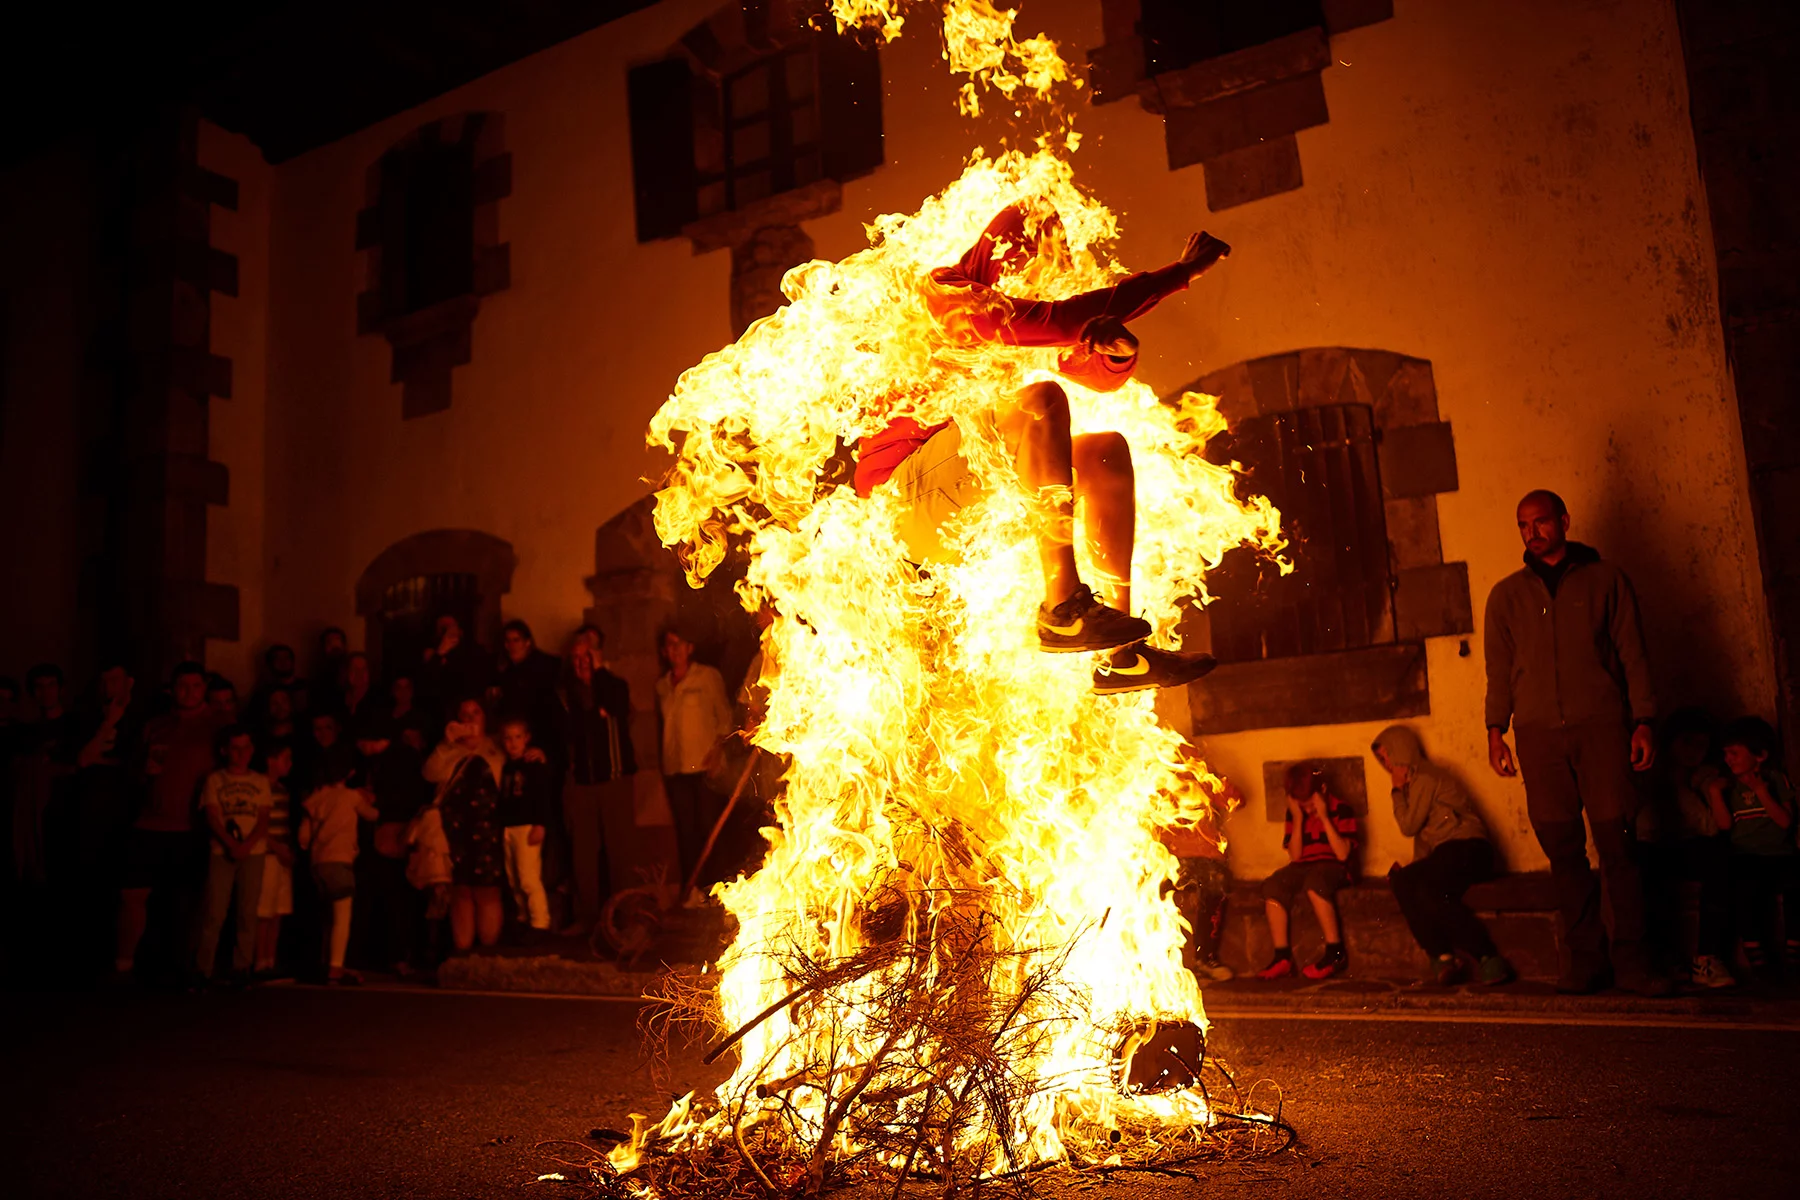 jumping through a bonfire in Navarra, Spain